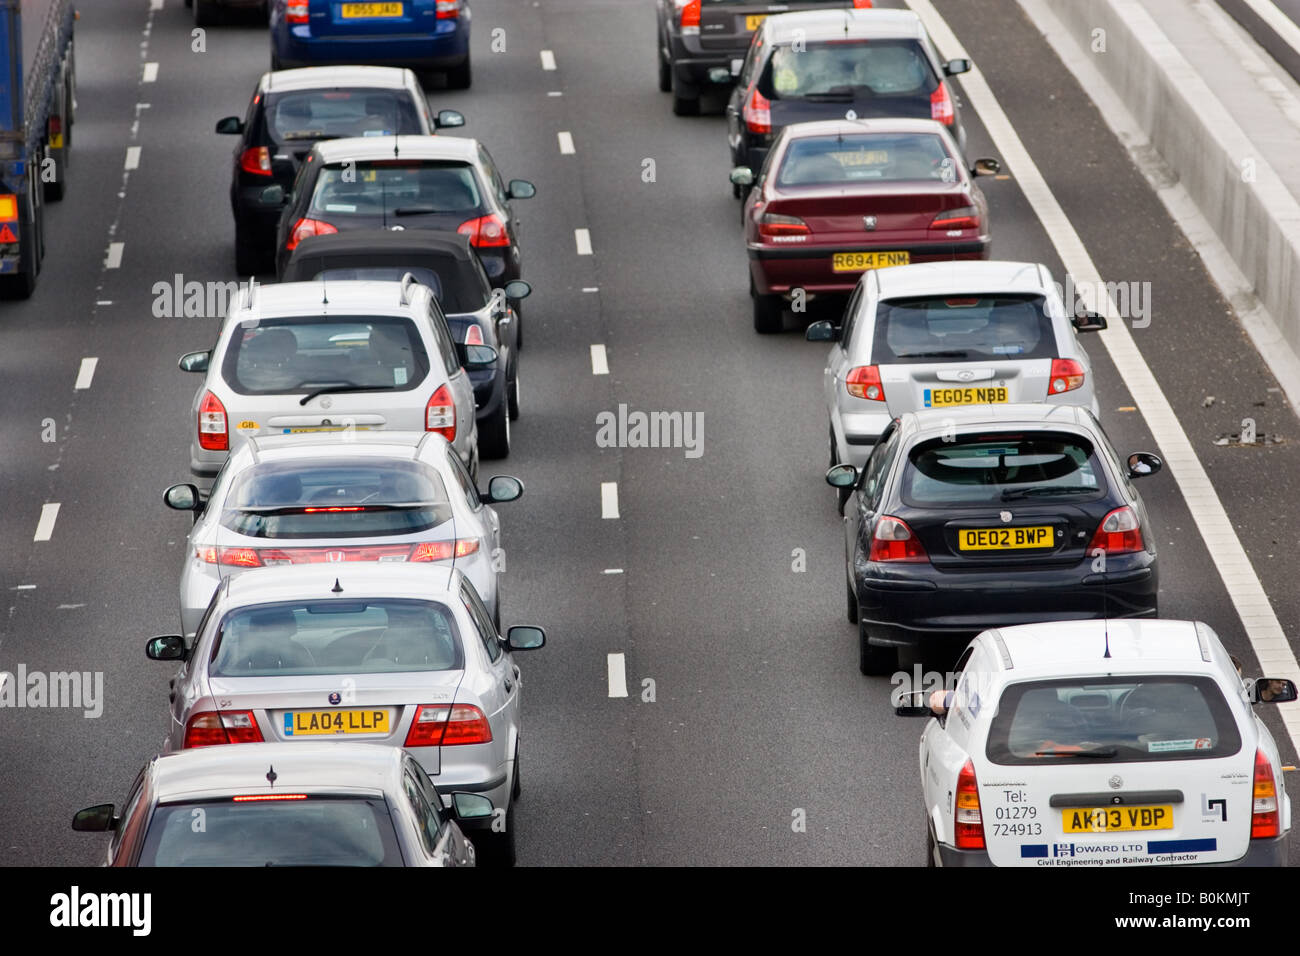 Berlinas a los paragolpes en la congestión del tráfico en la autopista M25 de Londres Reino Unido Foto de stock